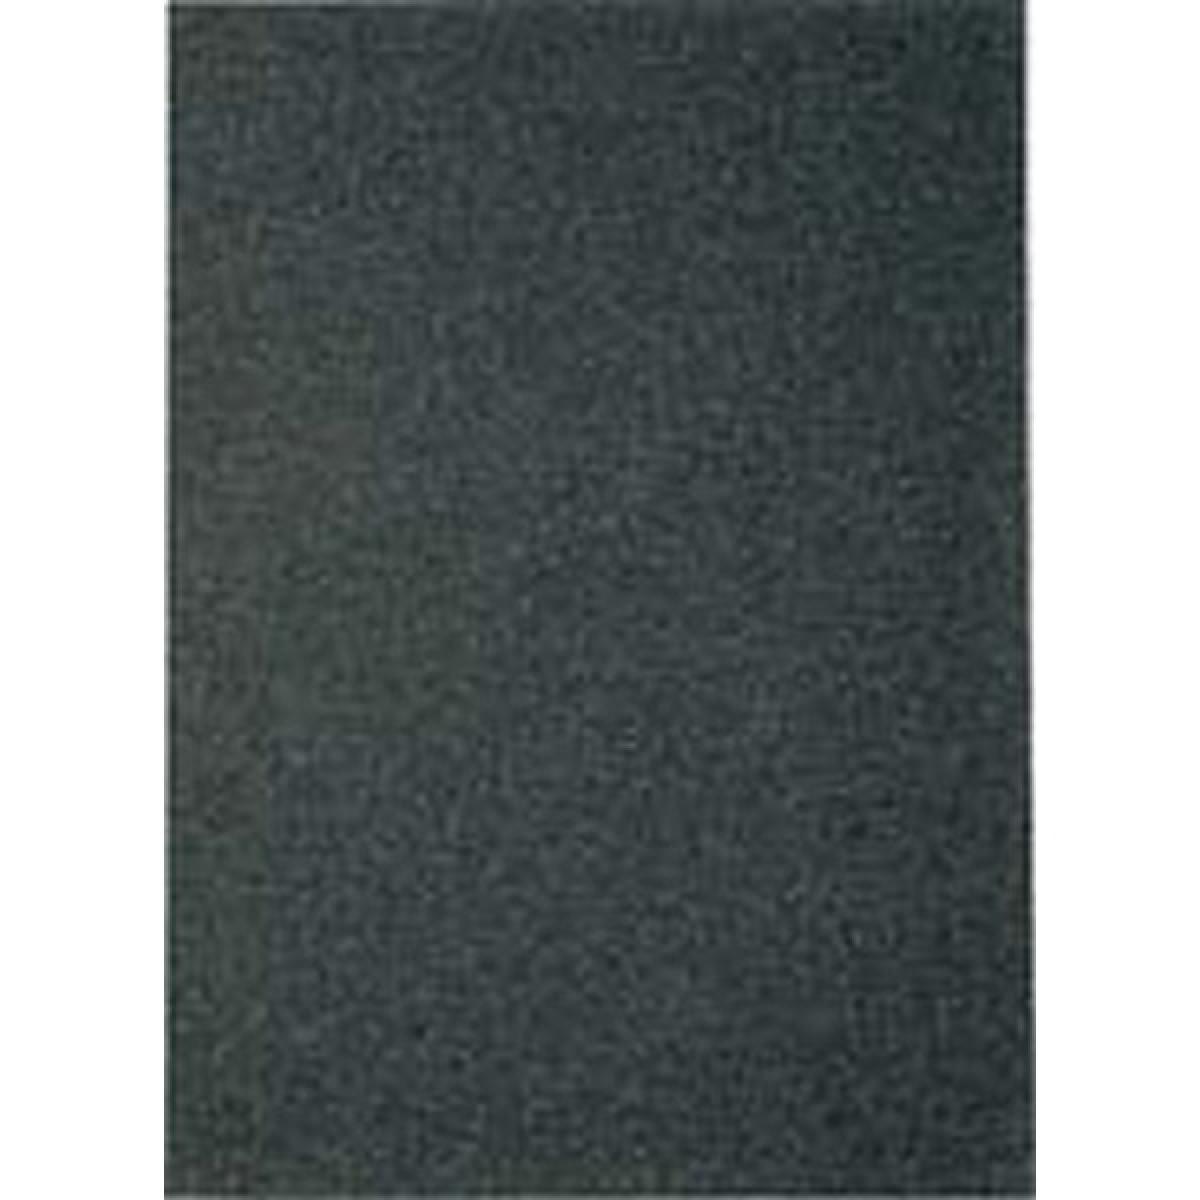 Klingspor - Papier en abrasif résistant à l'eau PS11230x280mm grain 150 Klingspor (Par 100) - Abrasifs et brosses